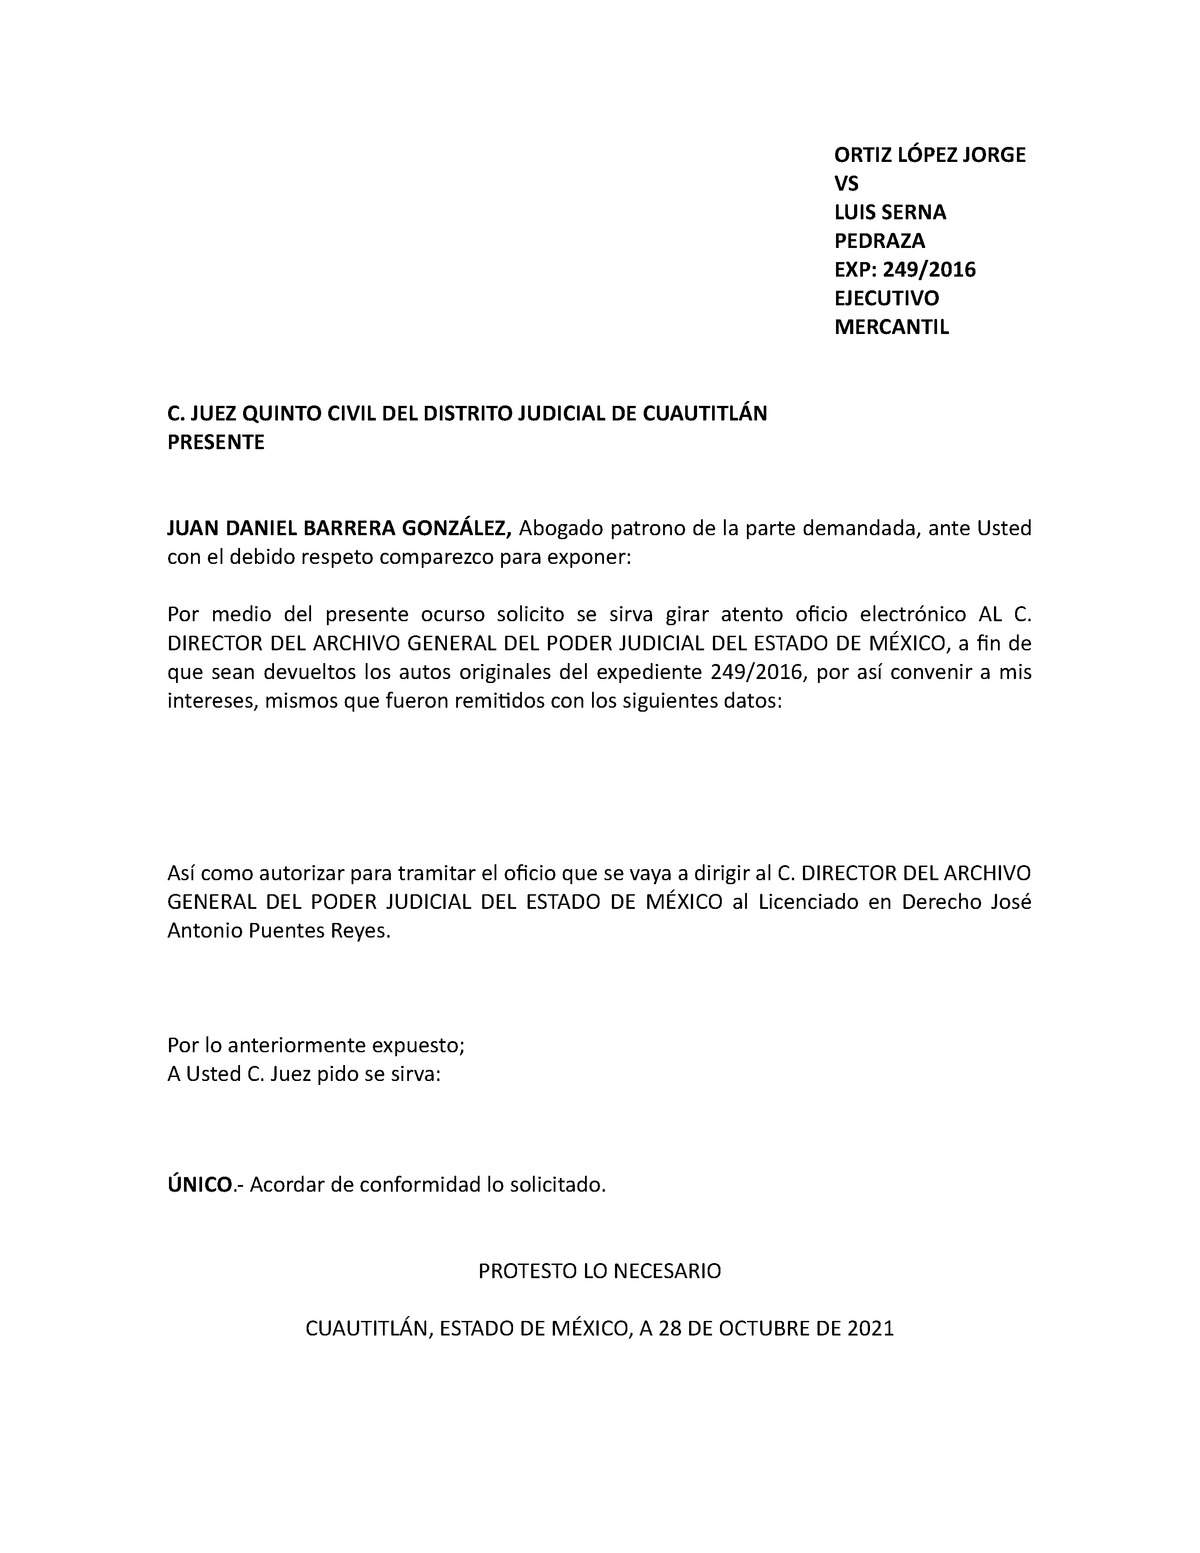 Escrito solicitando devolución del expediente al Archivo Judicial - ORTIZ  LÓPEZ JORGE VS LUIS SERNA - Studocu